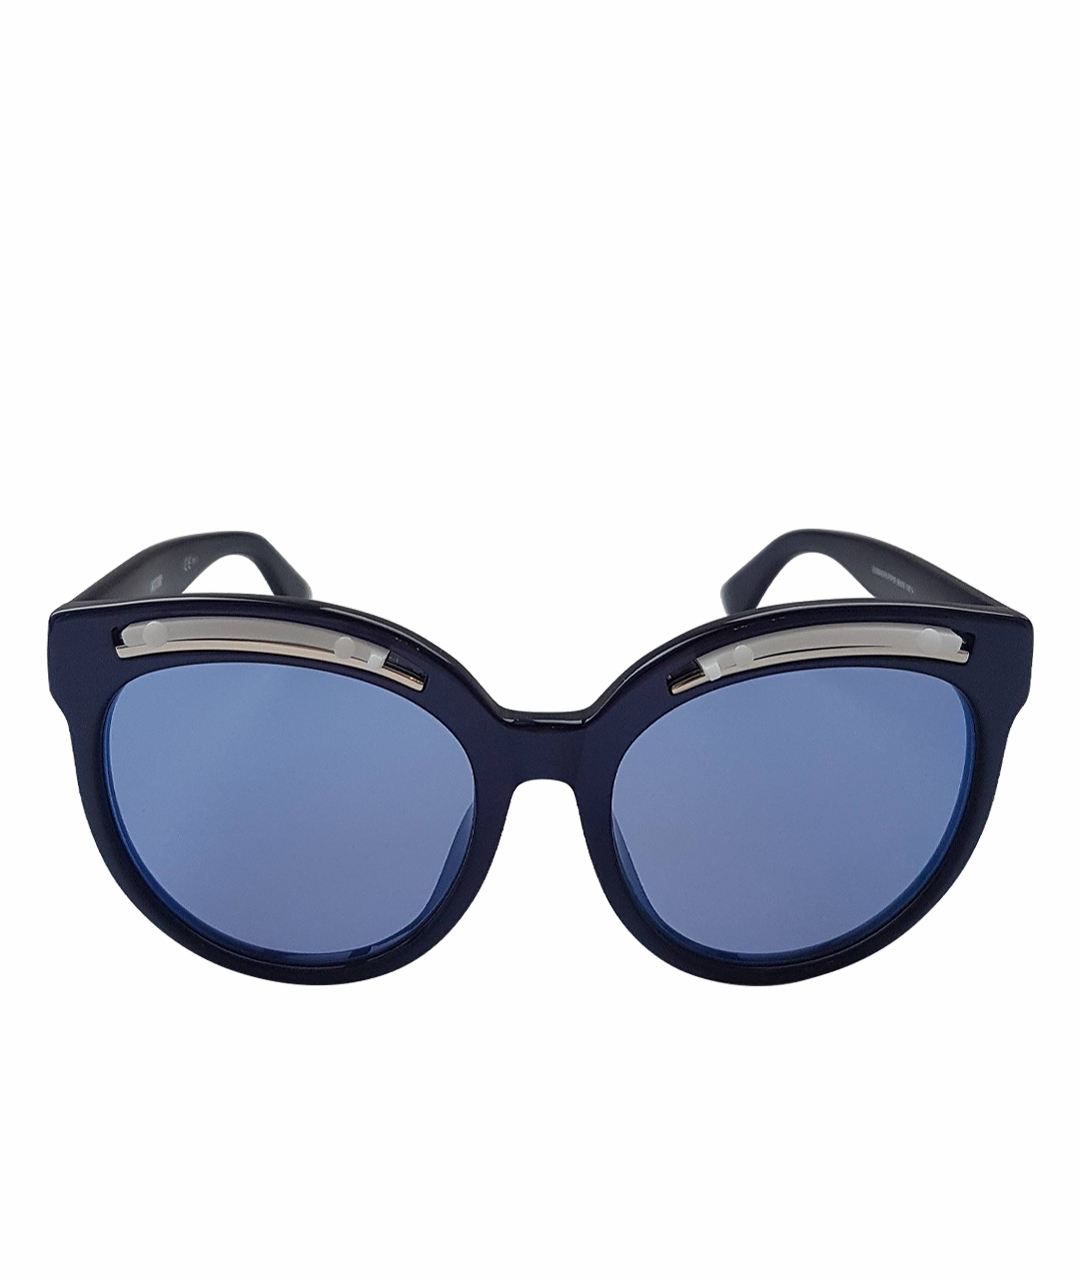 MOSCHINO Синие пластиковые солнцезащитные очки, фото 1